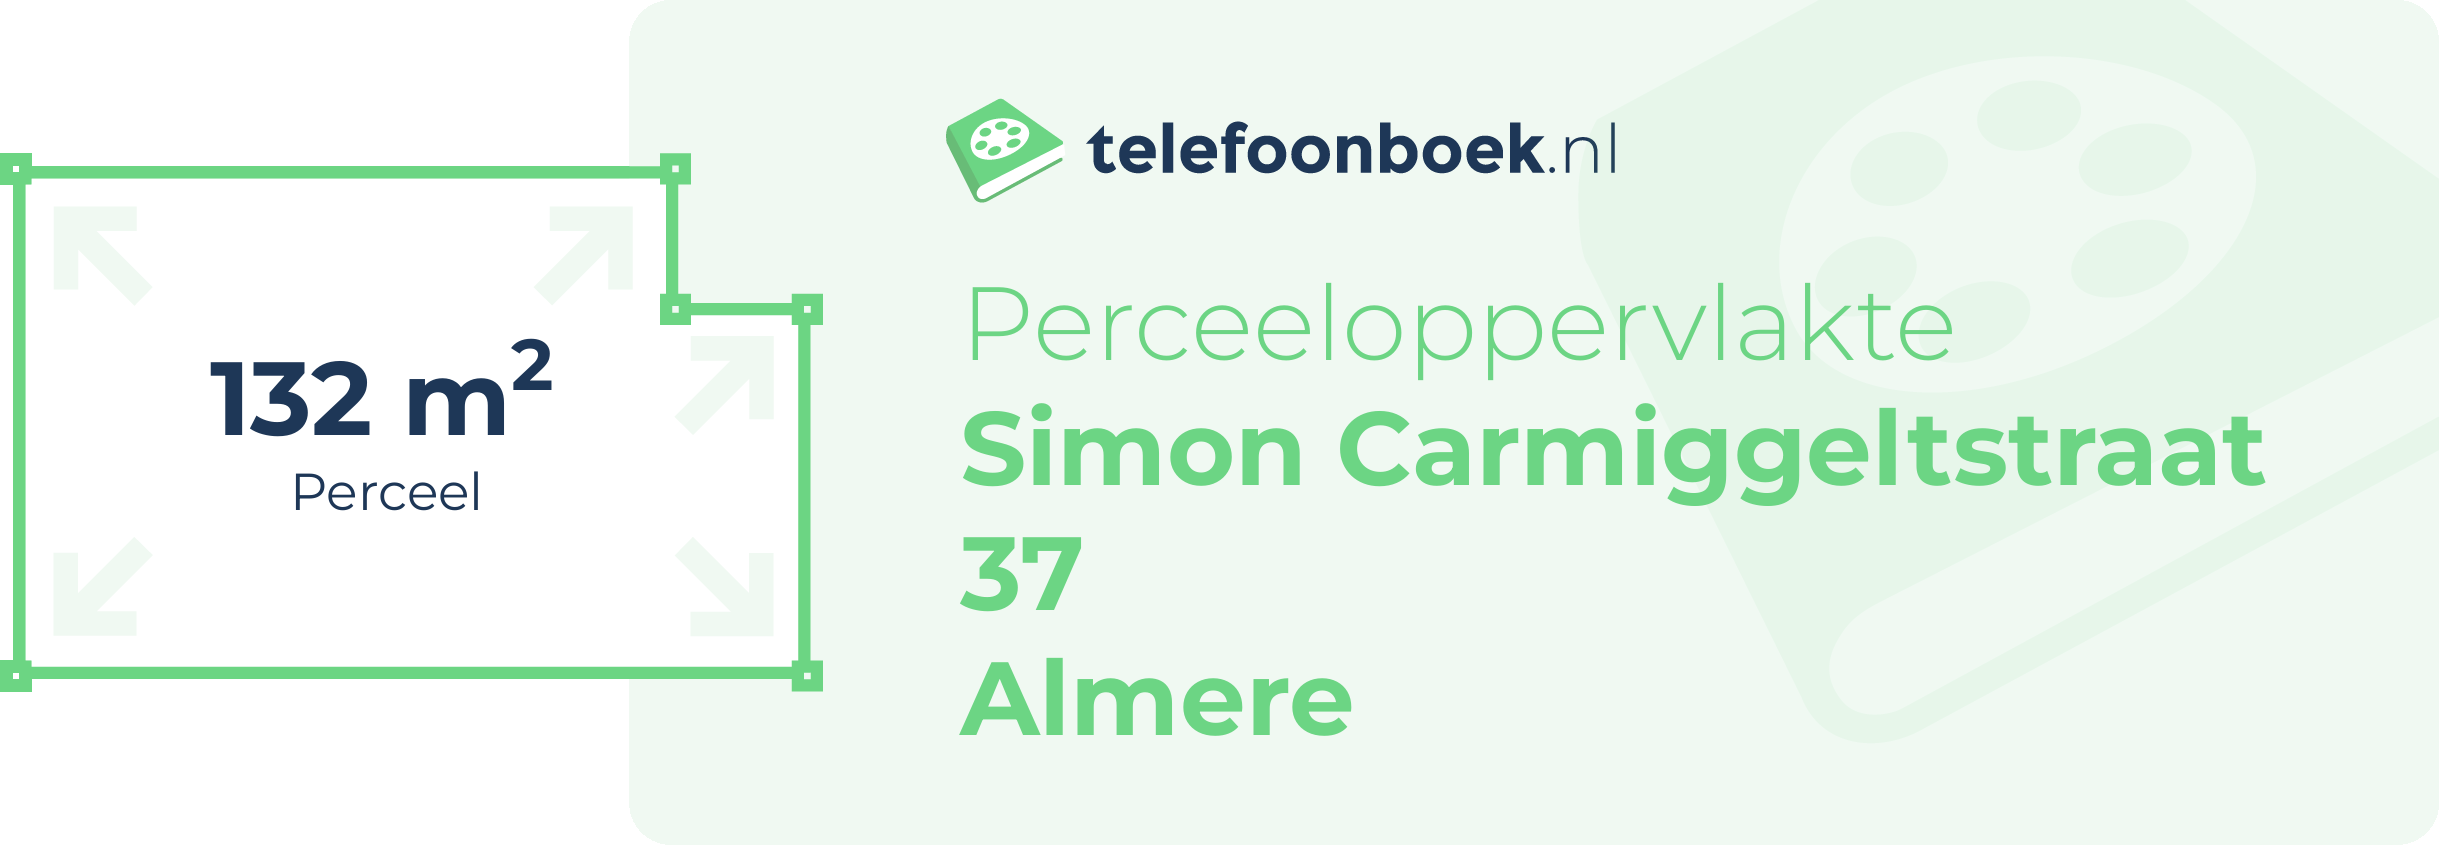 Perceeloppervlakte Simon Carmiggeltstraat 37 Almere